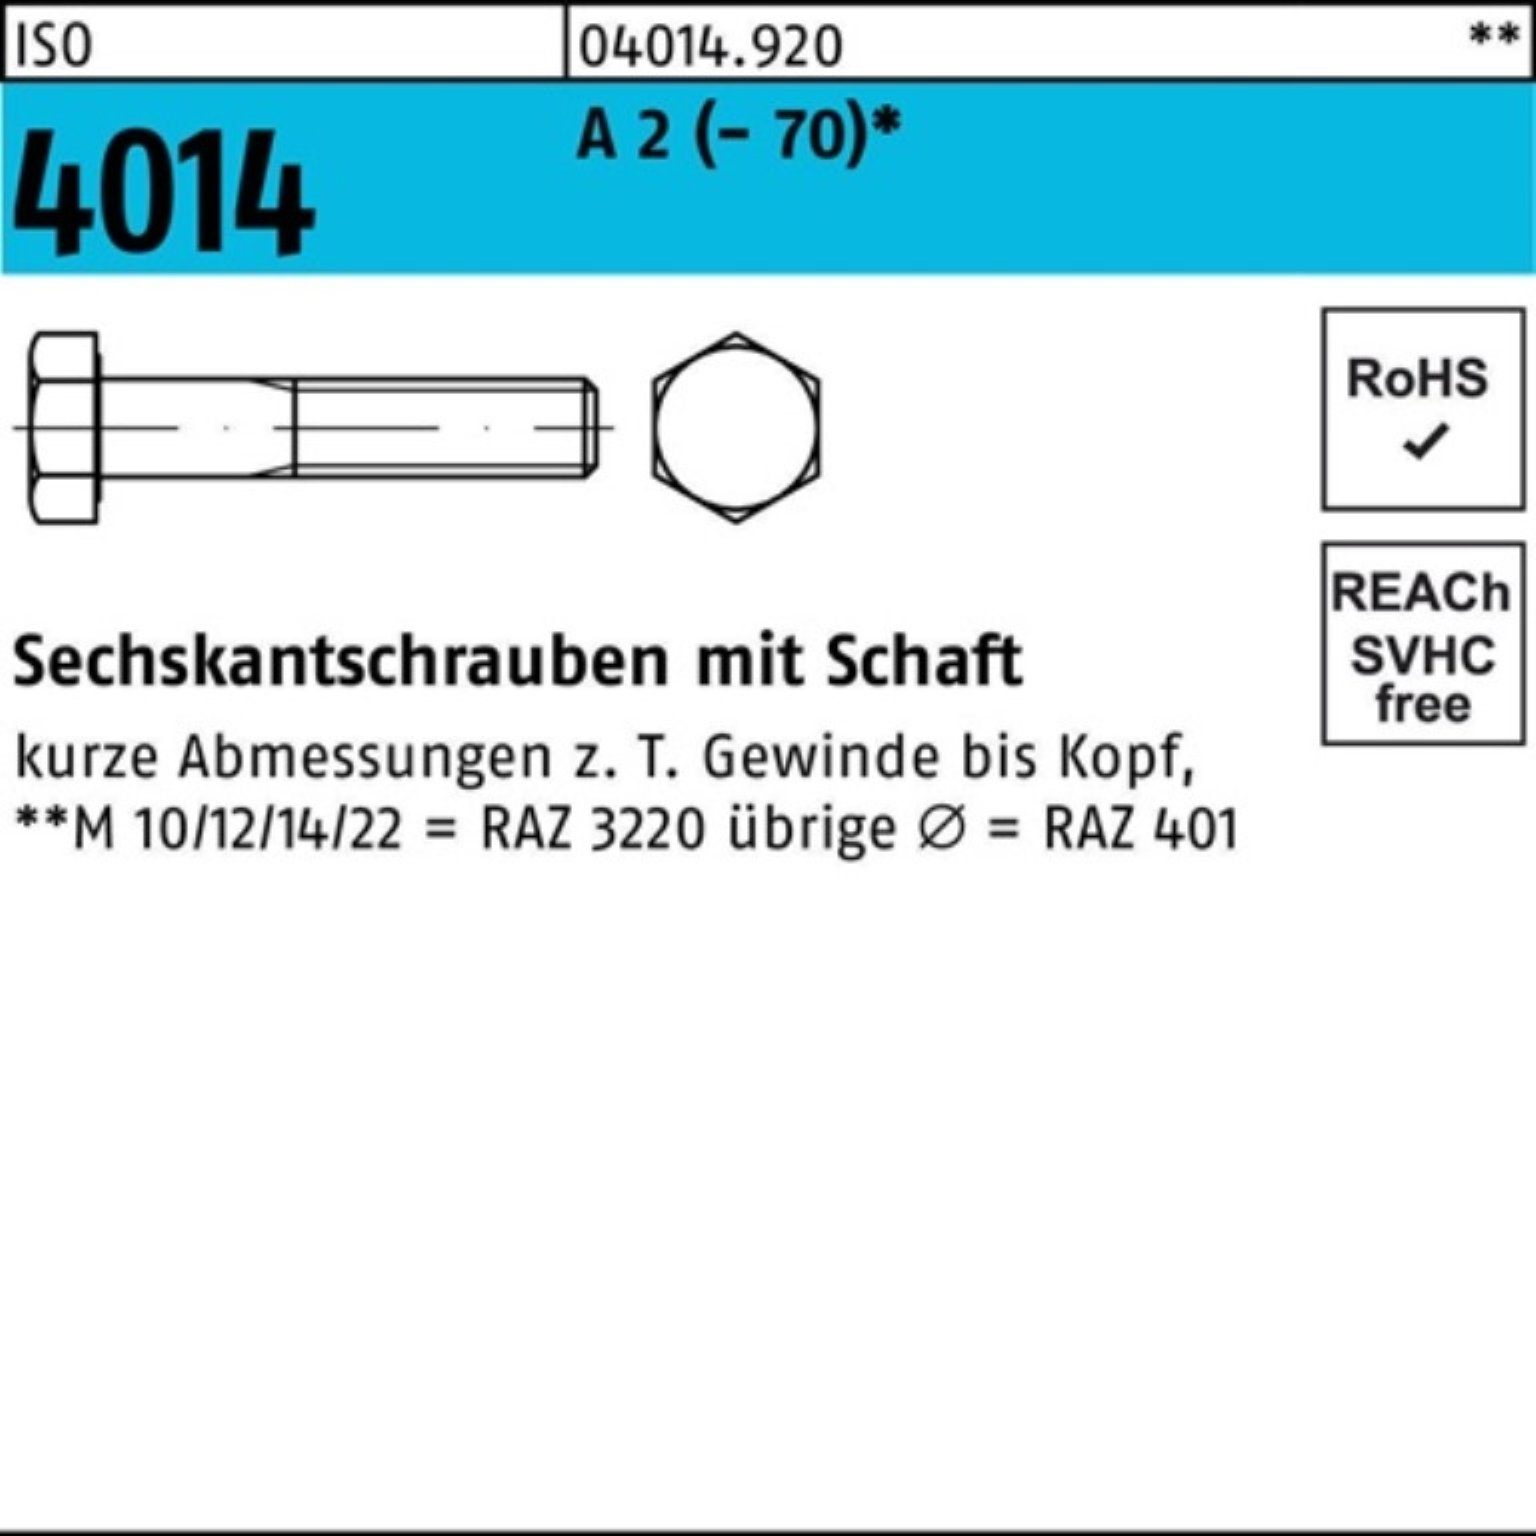 Bufab Sechskantschraube 100er Pack Sechskantschraube ISO 4014 Schaft M8x 150 A 2 (70) 50 St